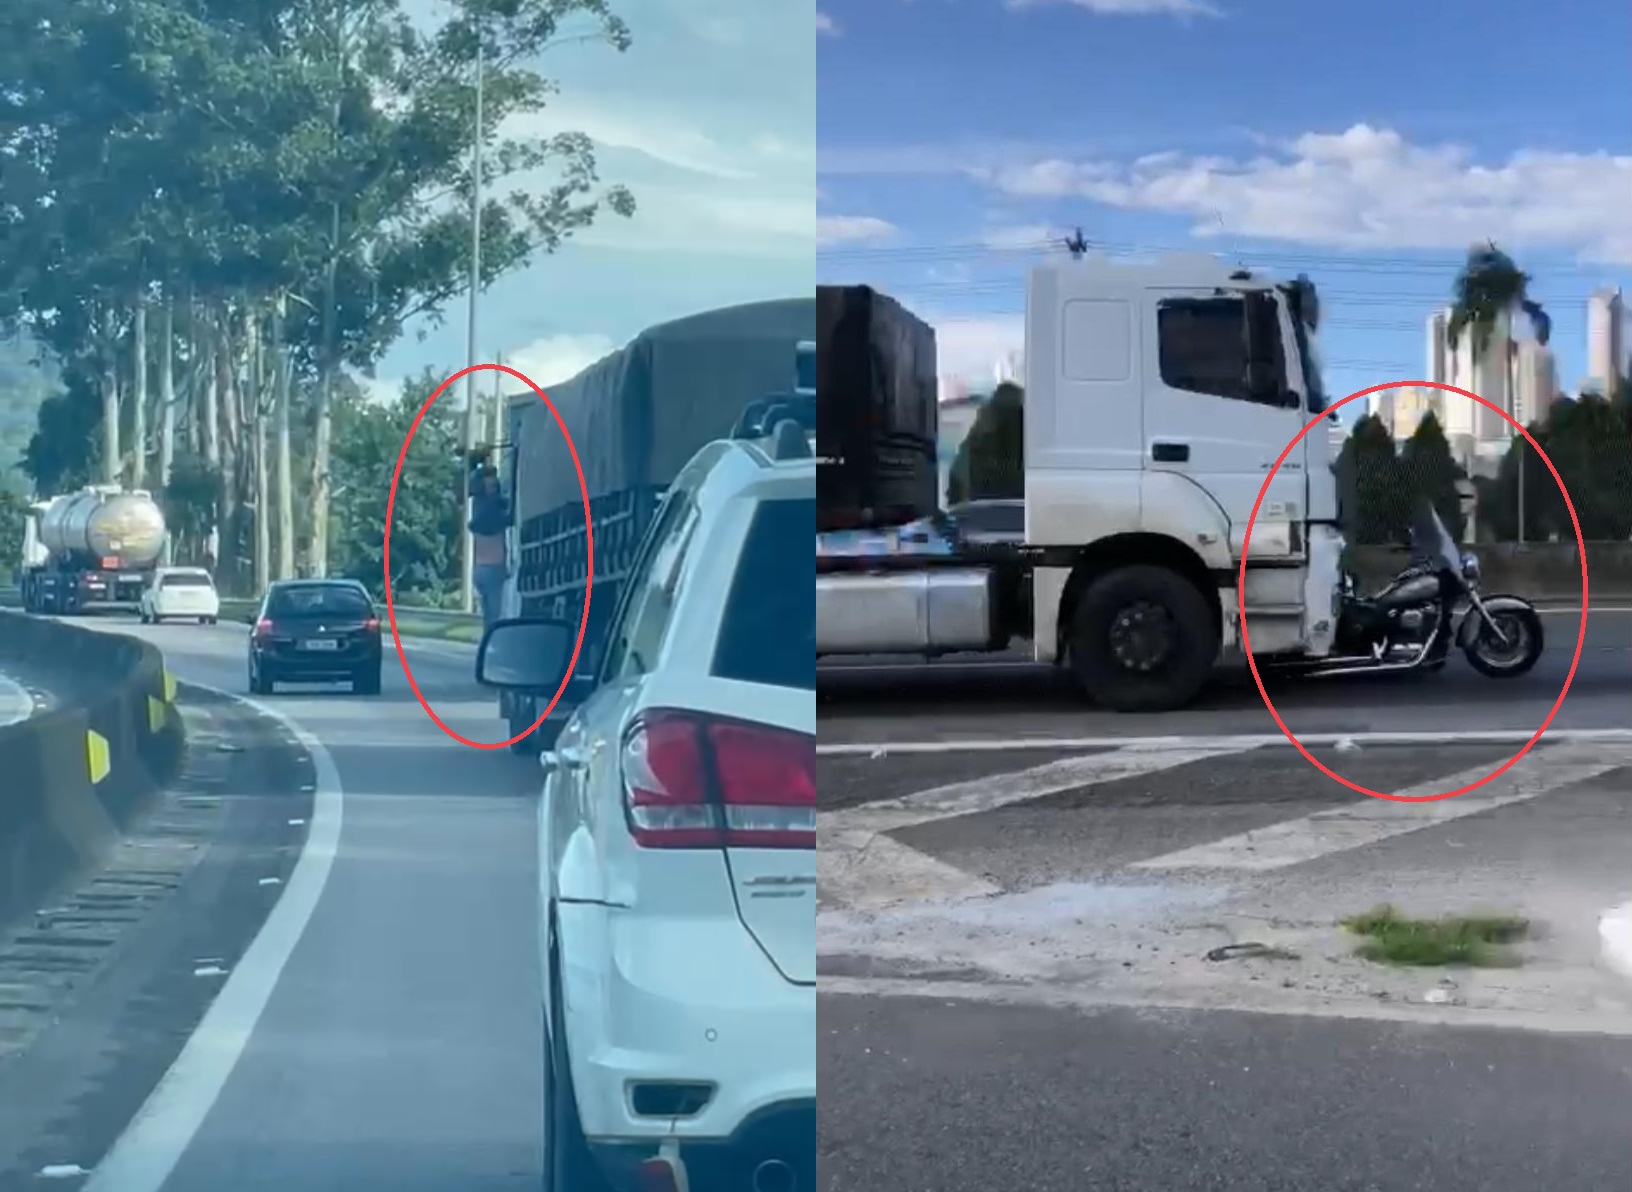 Vídeo: caminhoneiro percorre 32 km com homem pendurado na janela após acidente em SC